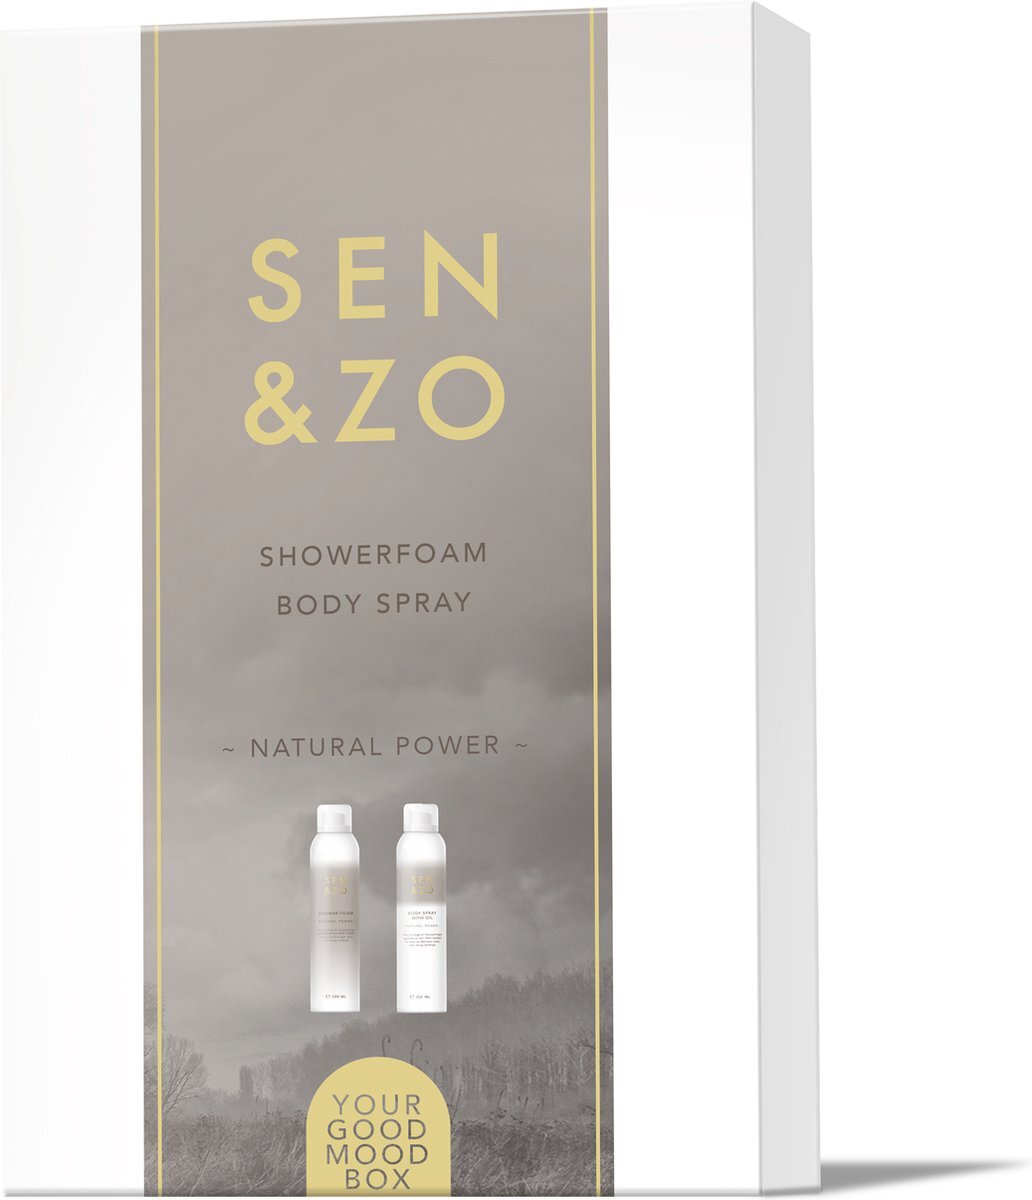 Sen&Zo Cadeaubox Bodyspray en Showerfoam Natural Power